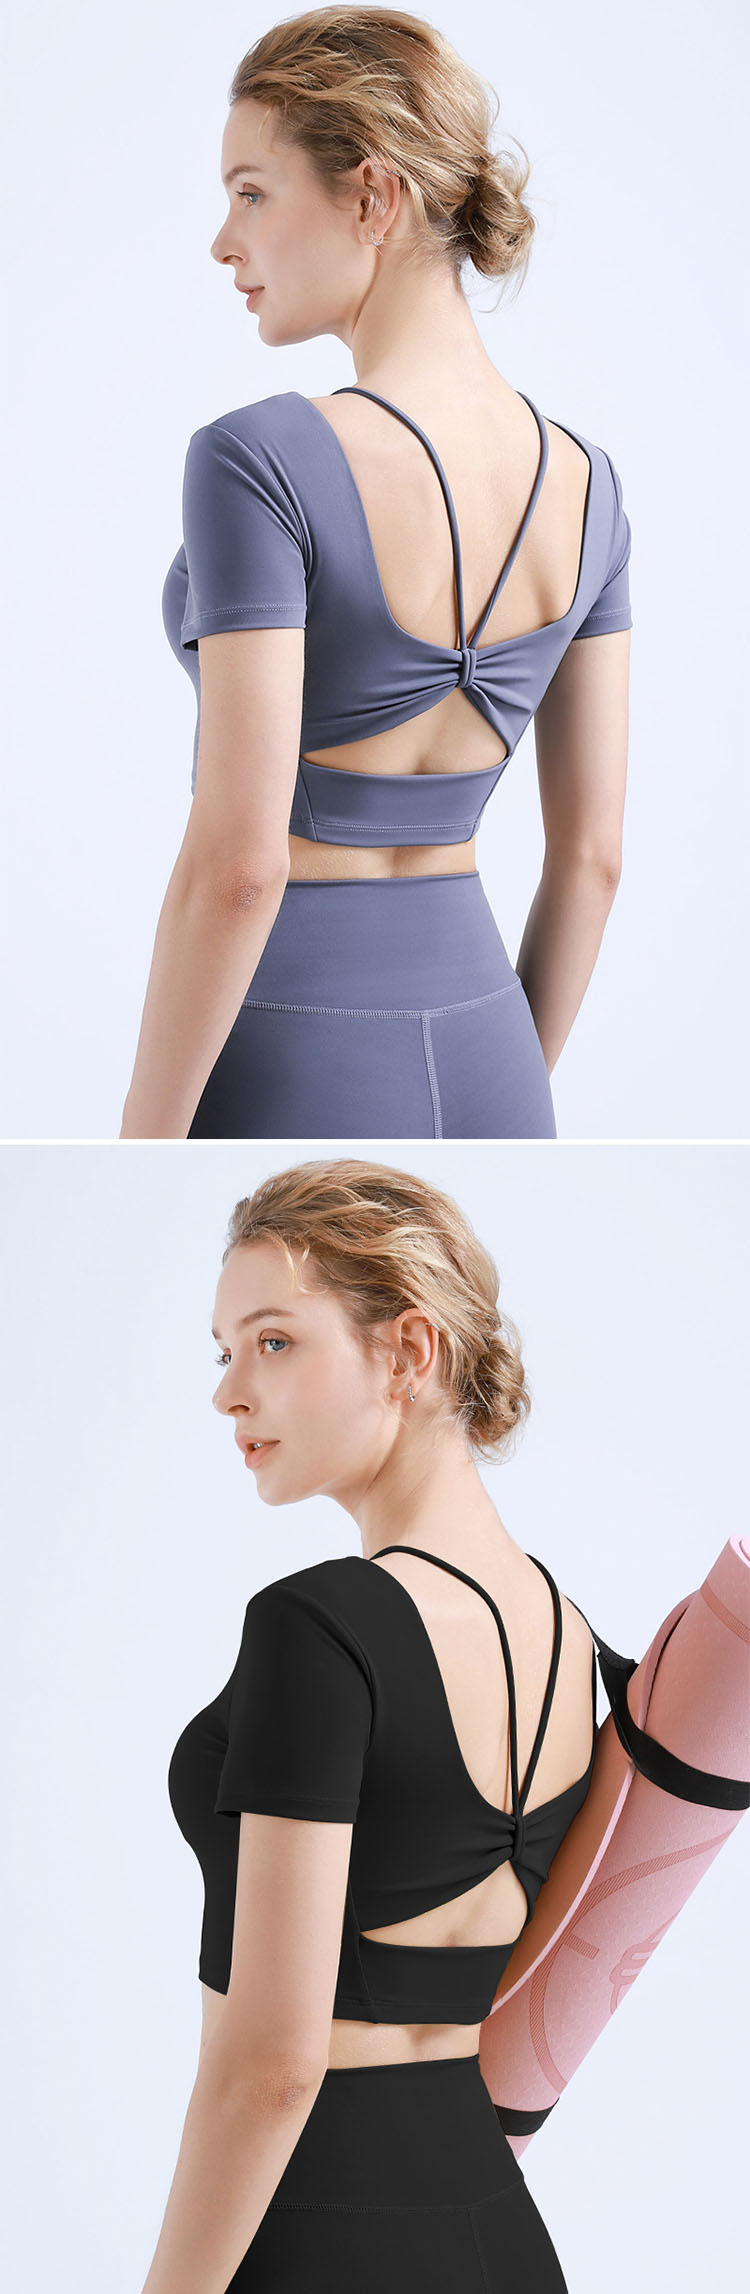 shoulder straps, or close-fitting diagonal shoulder cutting.